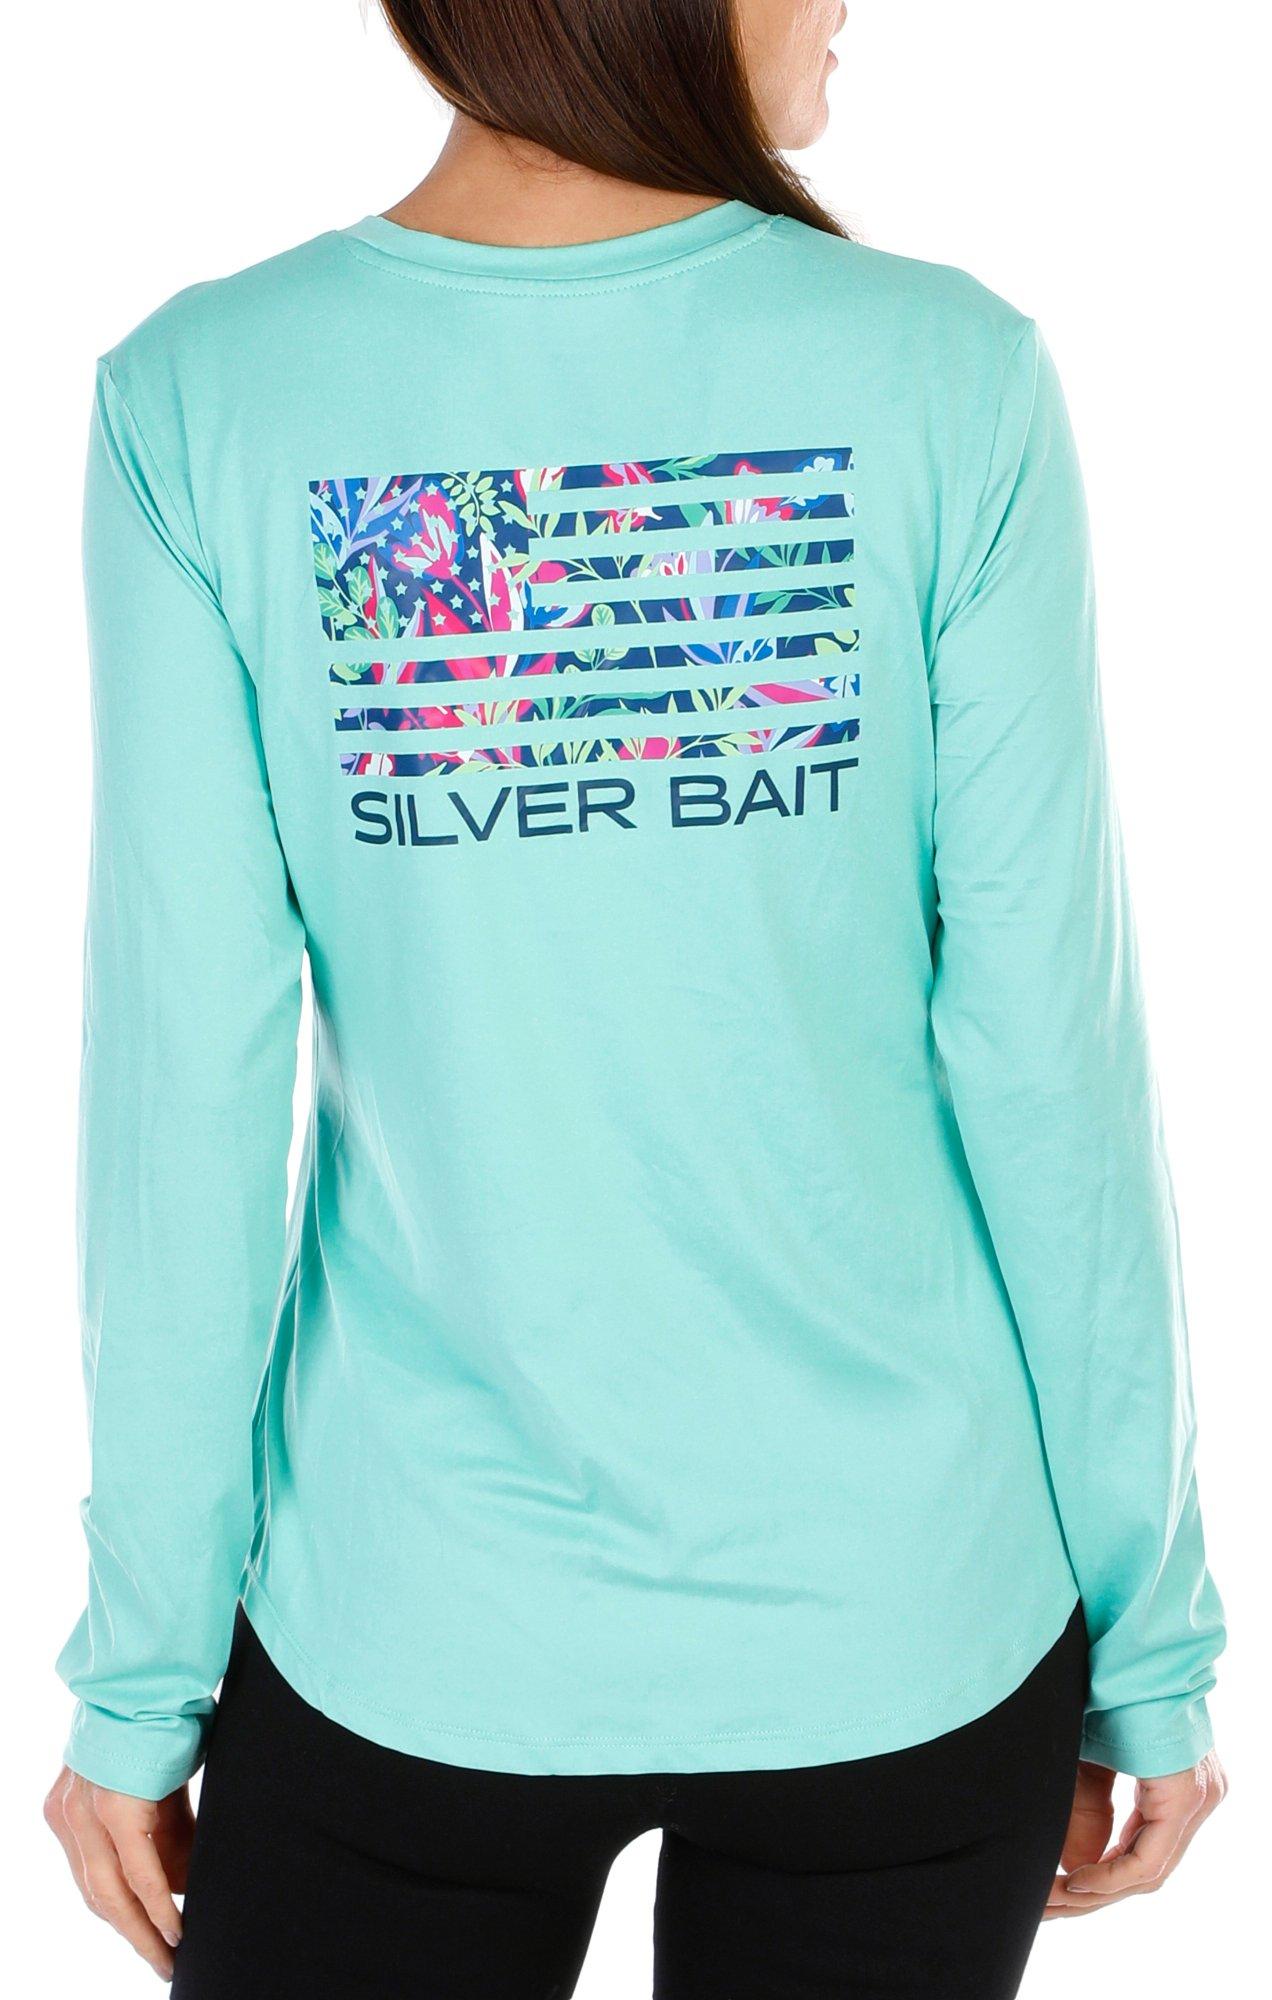 Silver bait long sleeve fishing shirt XL men's shirt